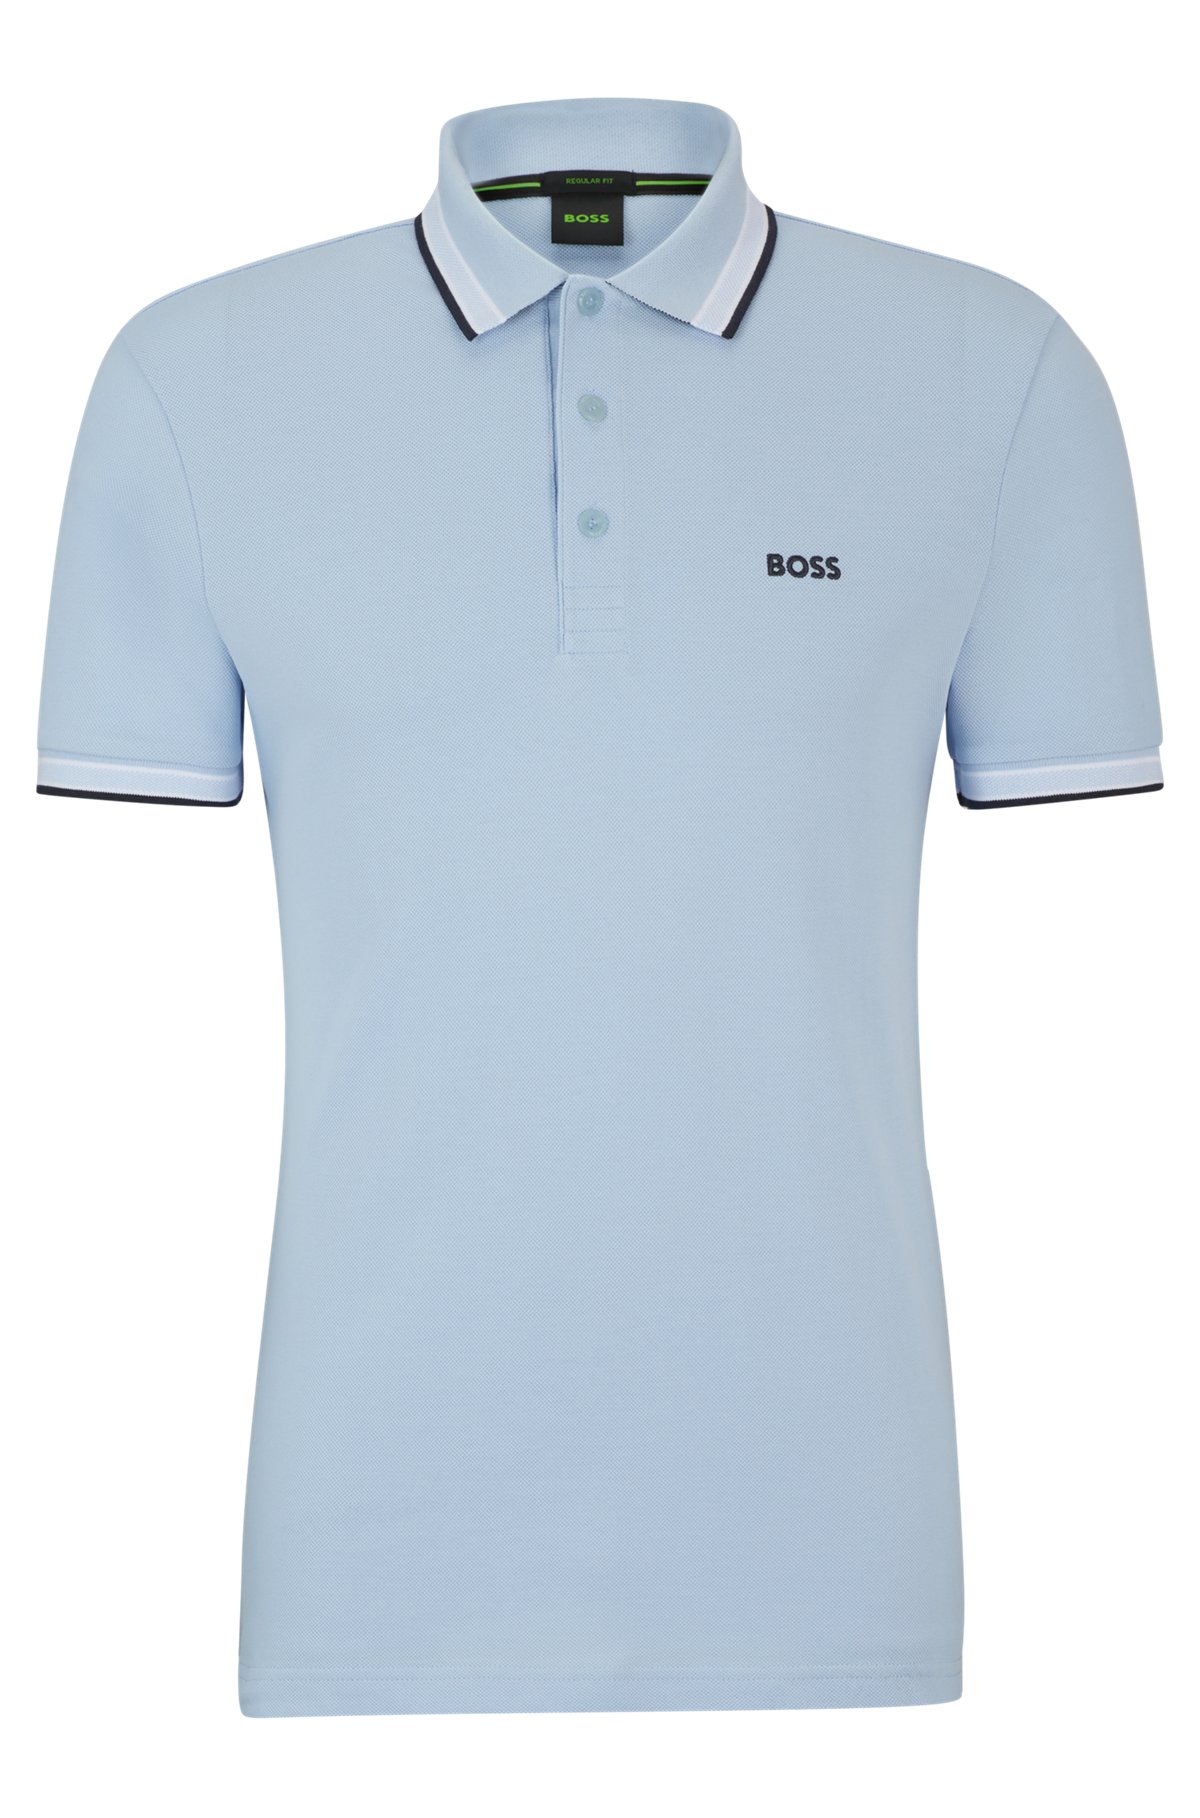 Polo en coton biologique avec logos contrastants, bleu clair